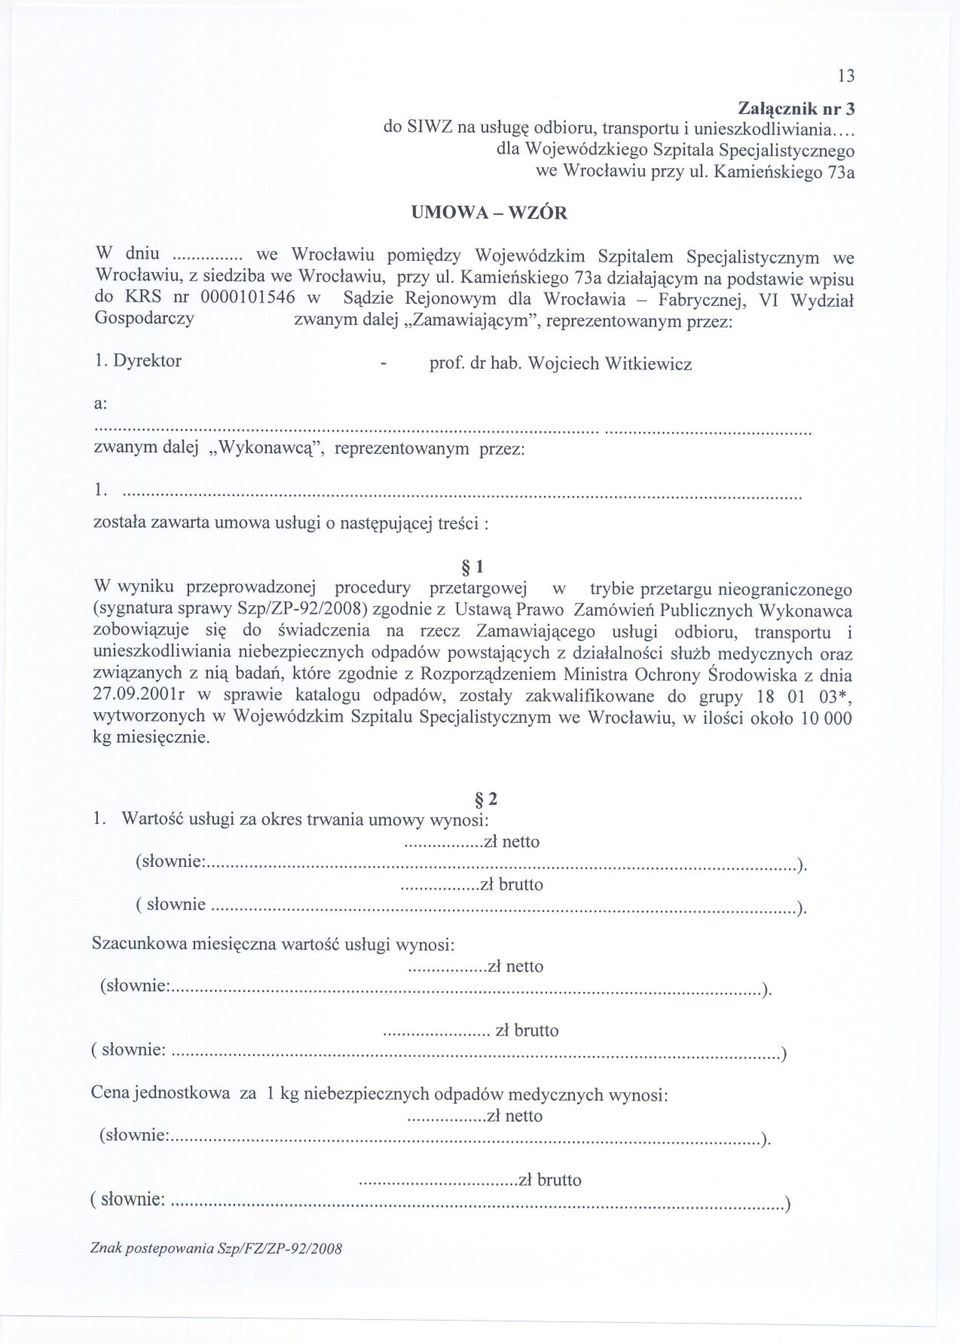 Kamienskiego 73a dzialajacym na podstawie wpisu do KRS nr 0000101546 w Sadzie Rejonowym dla Wroclawia - Fabrycznej, VI Wydzial Gospodarczy zwanym dalej "Zamawiajacym", reprezentowanym przez: 1.